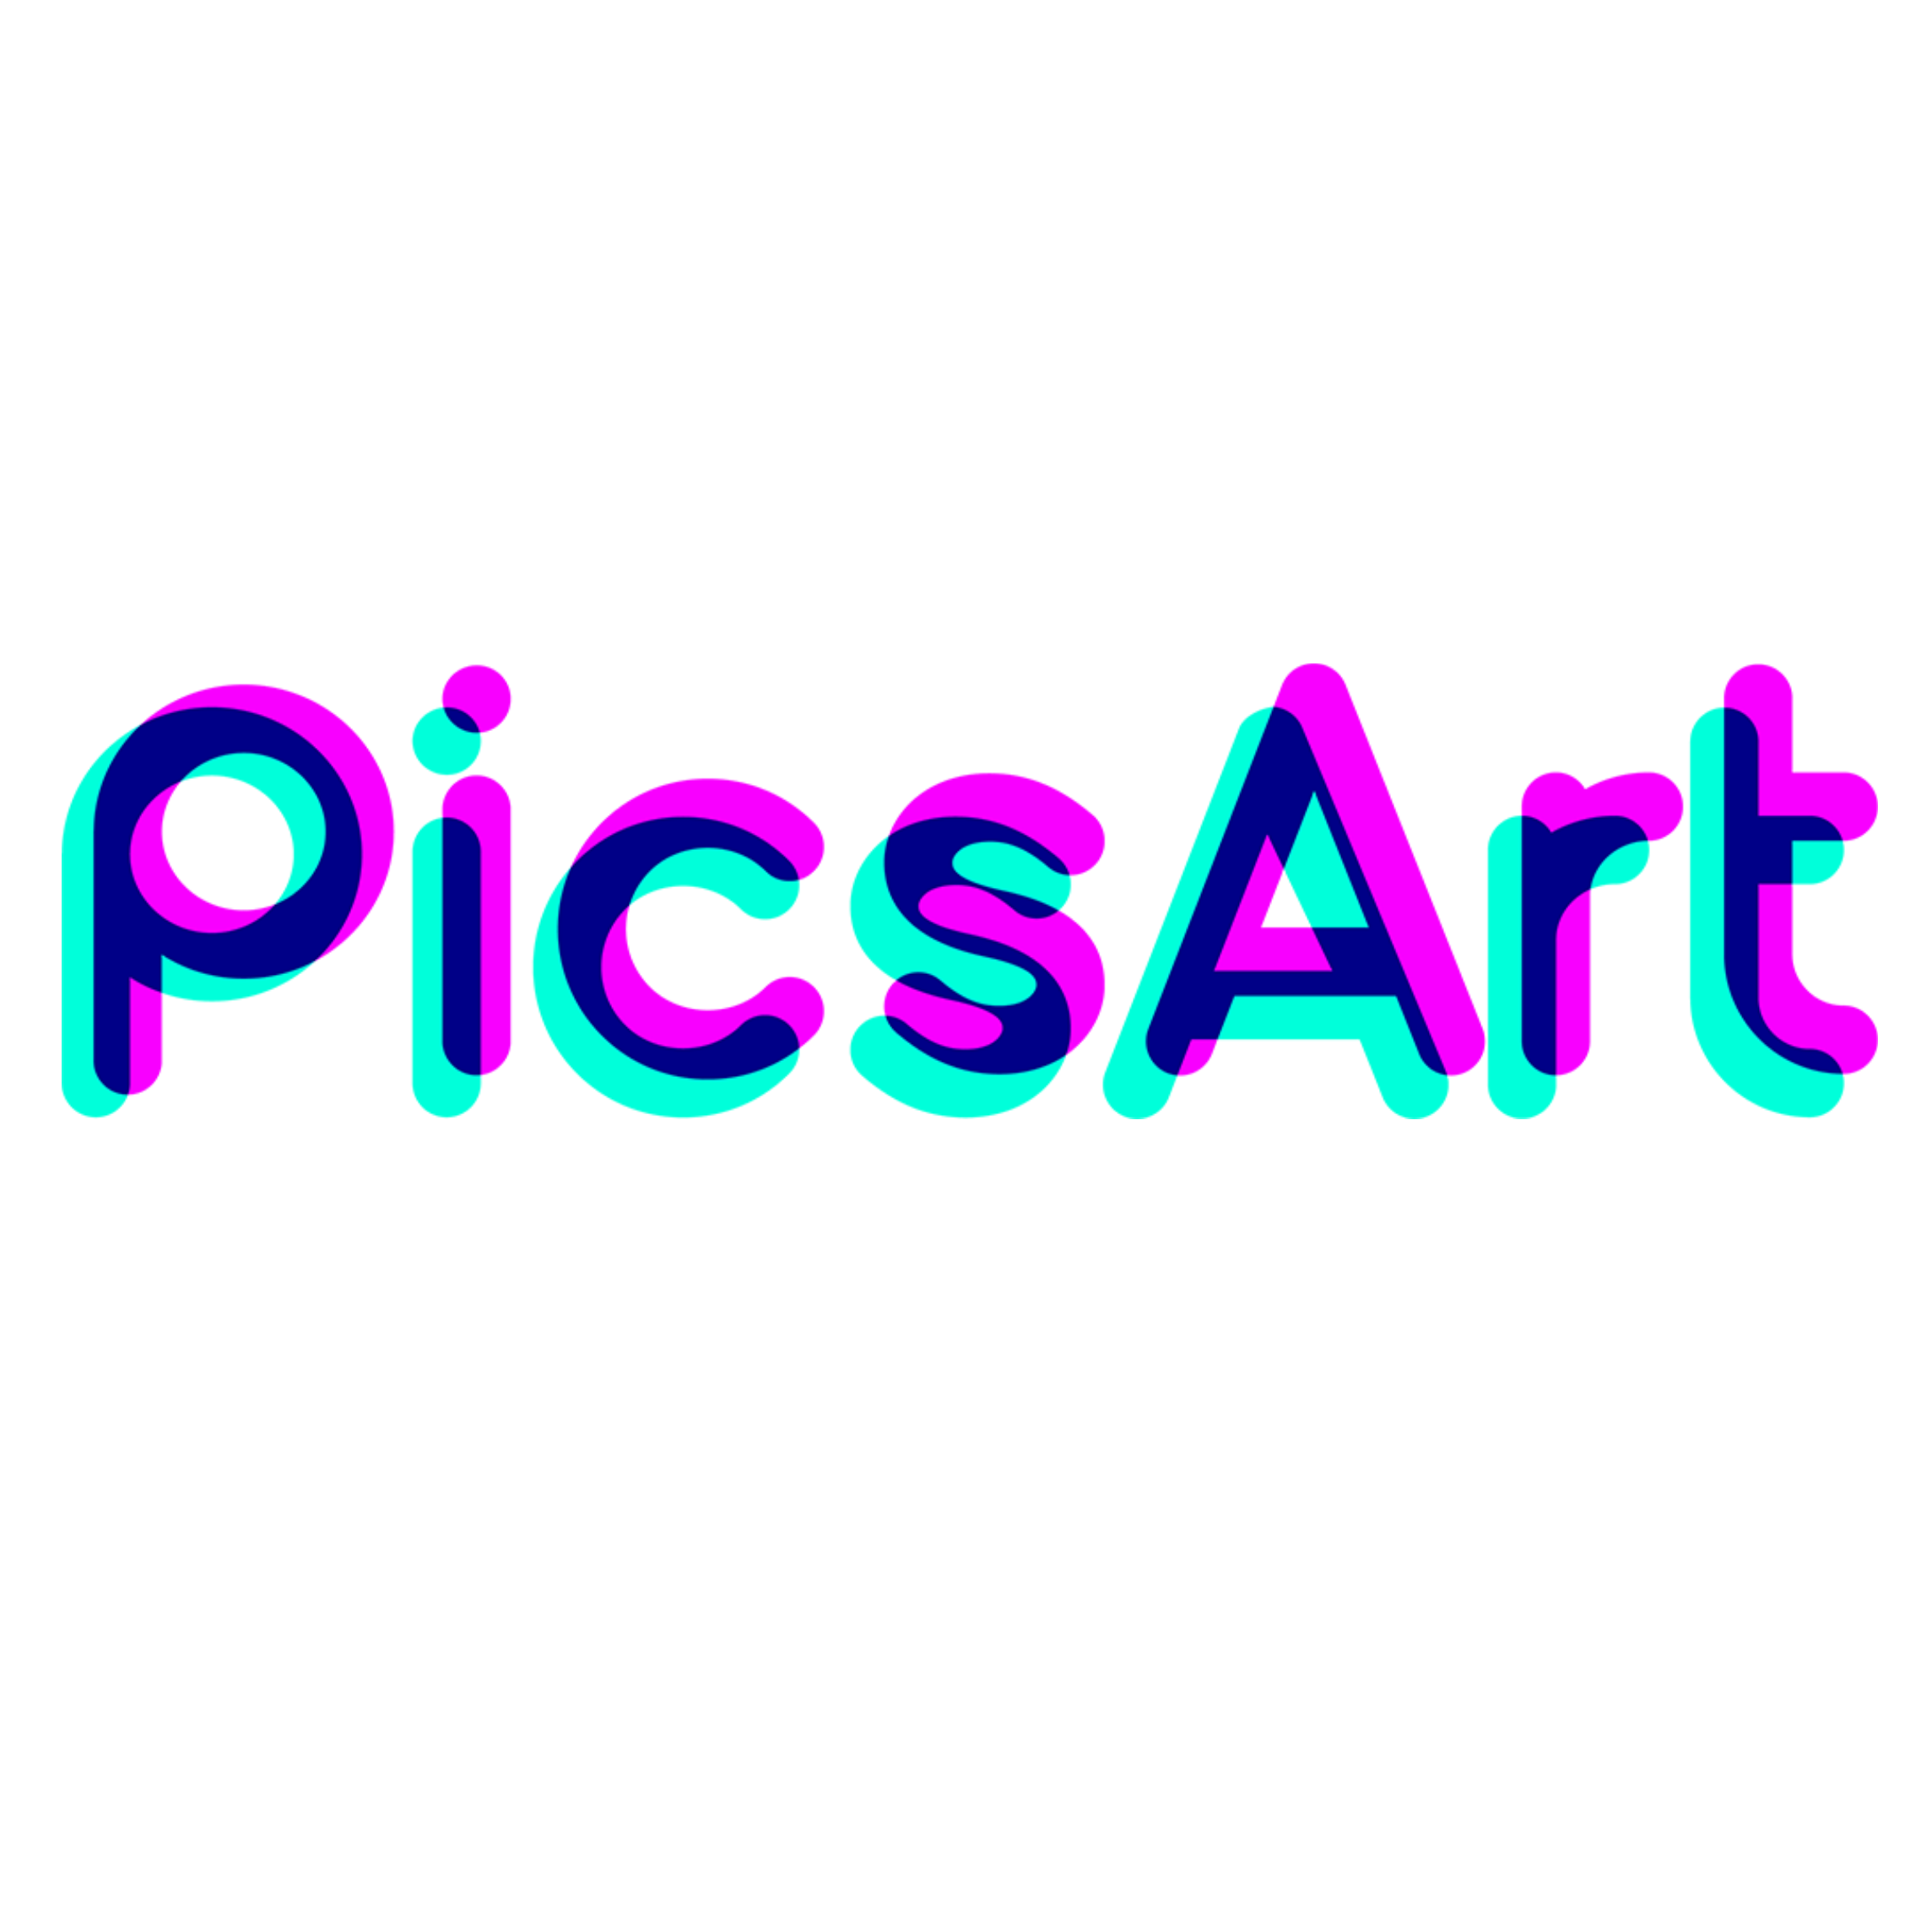 Pixart premium. Пиксарт. Значок пиксарт. Pics Art лого. PICSART программа логотип.